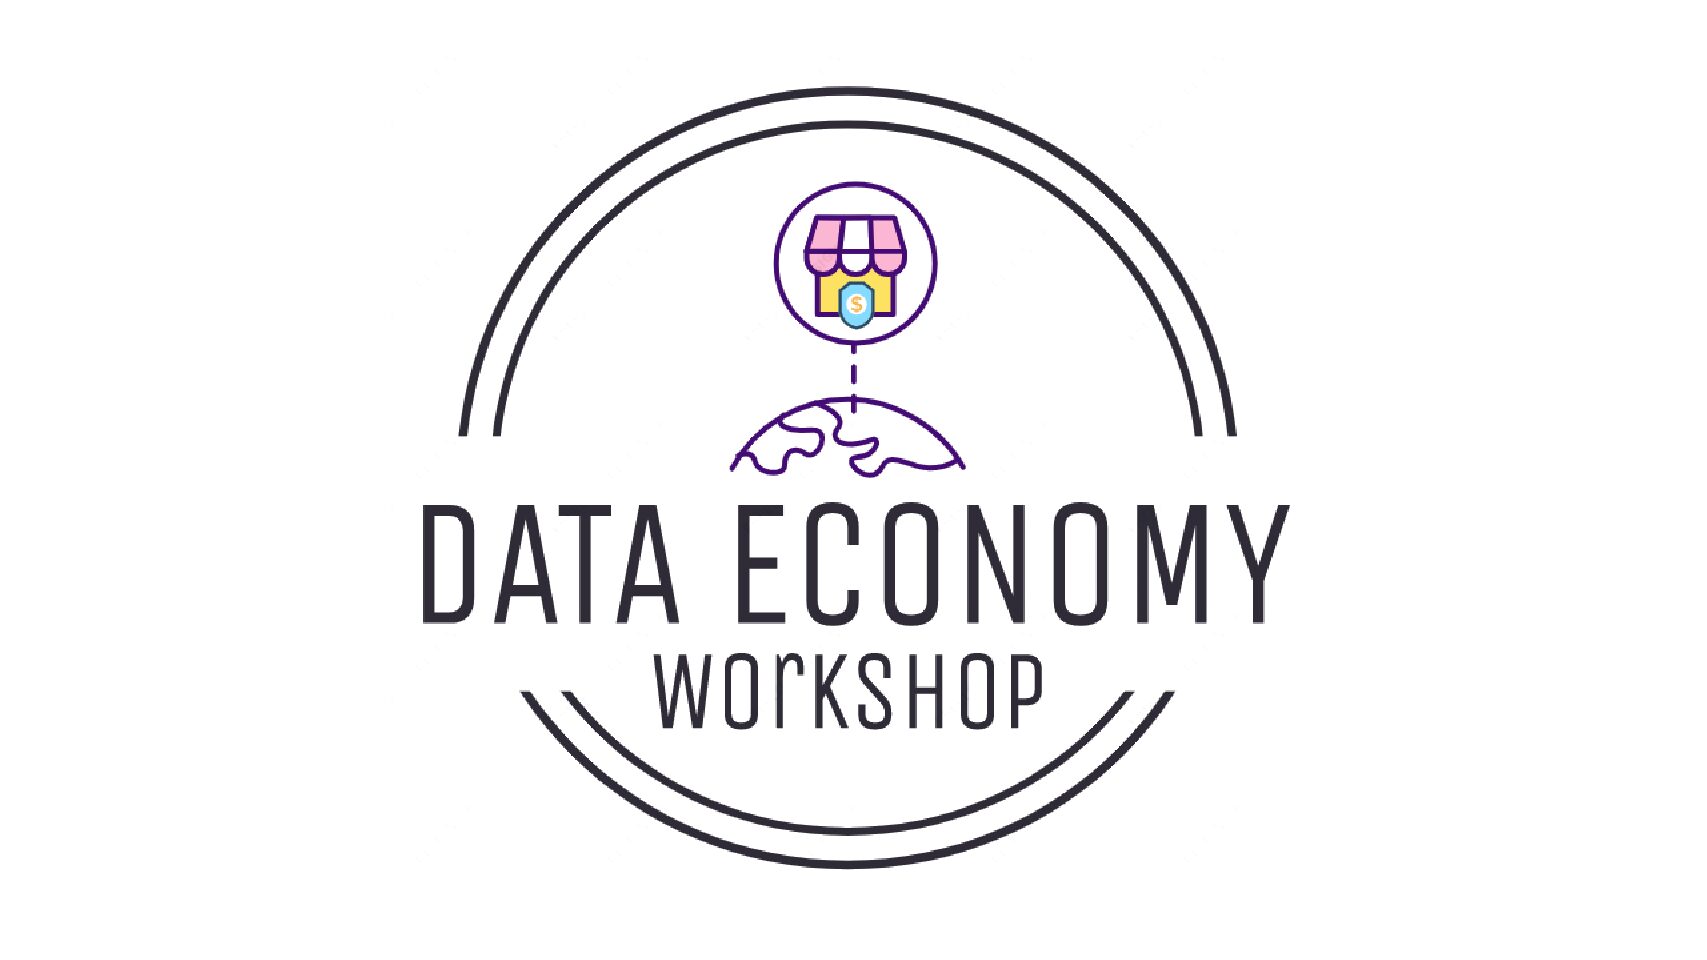 Data Economy Workshop